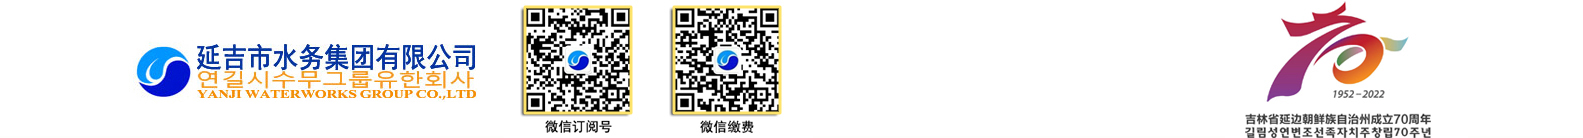 濰坊華光散熱器股份有限公司logo